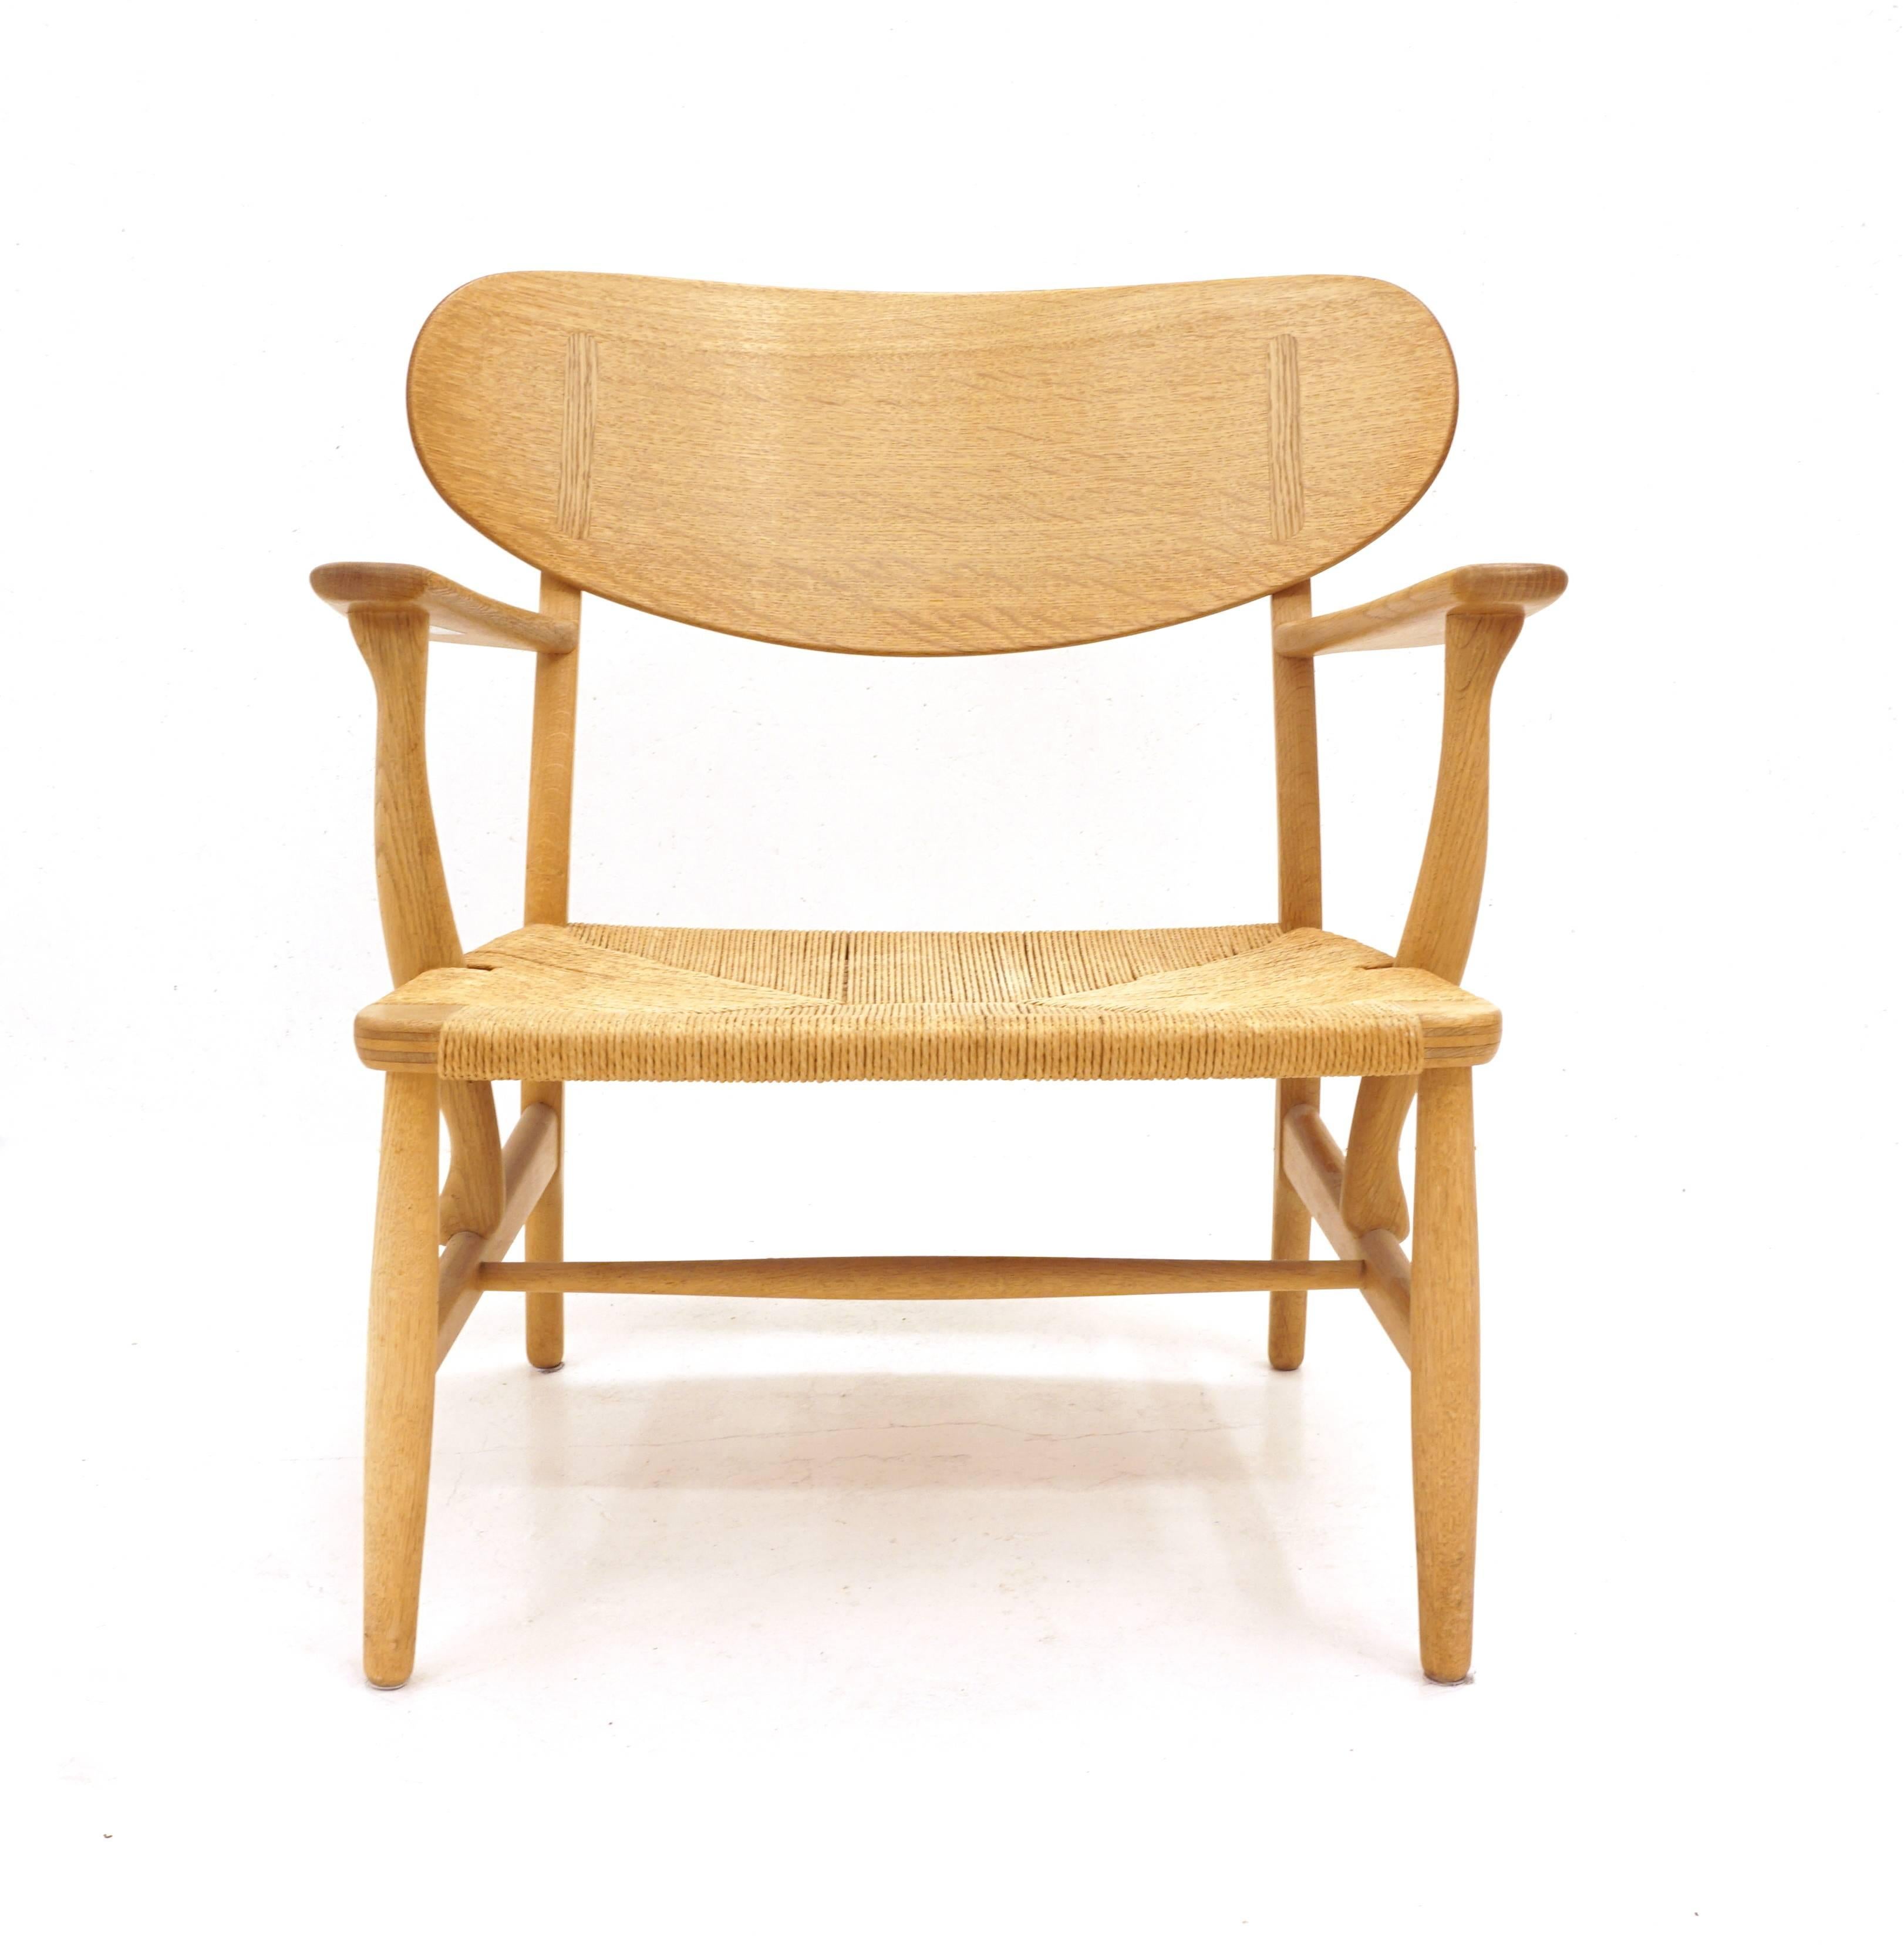 Scandinavian Modern Hans Wegner, Easy Chair, Oak, CH 22 Shell Chair, Maker Carl Hansen & Son